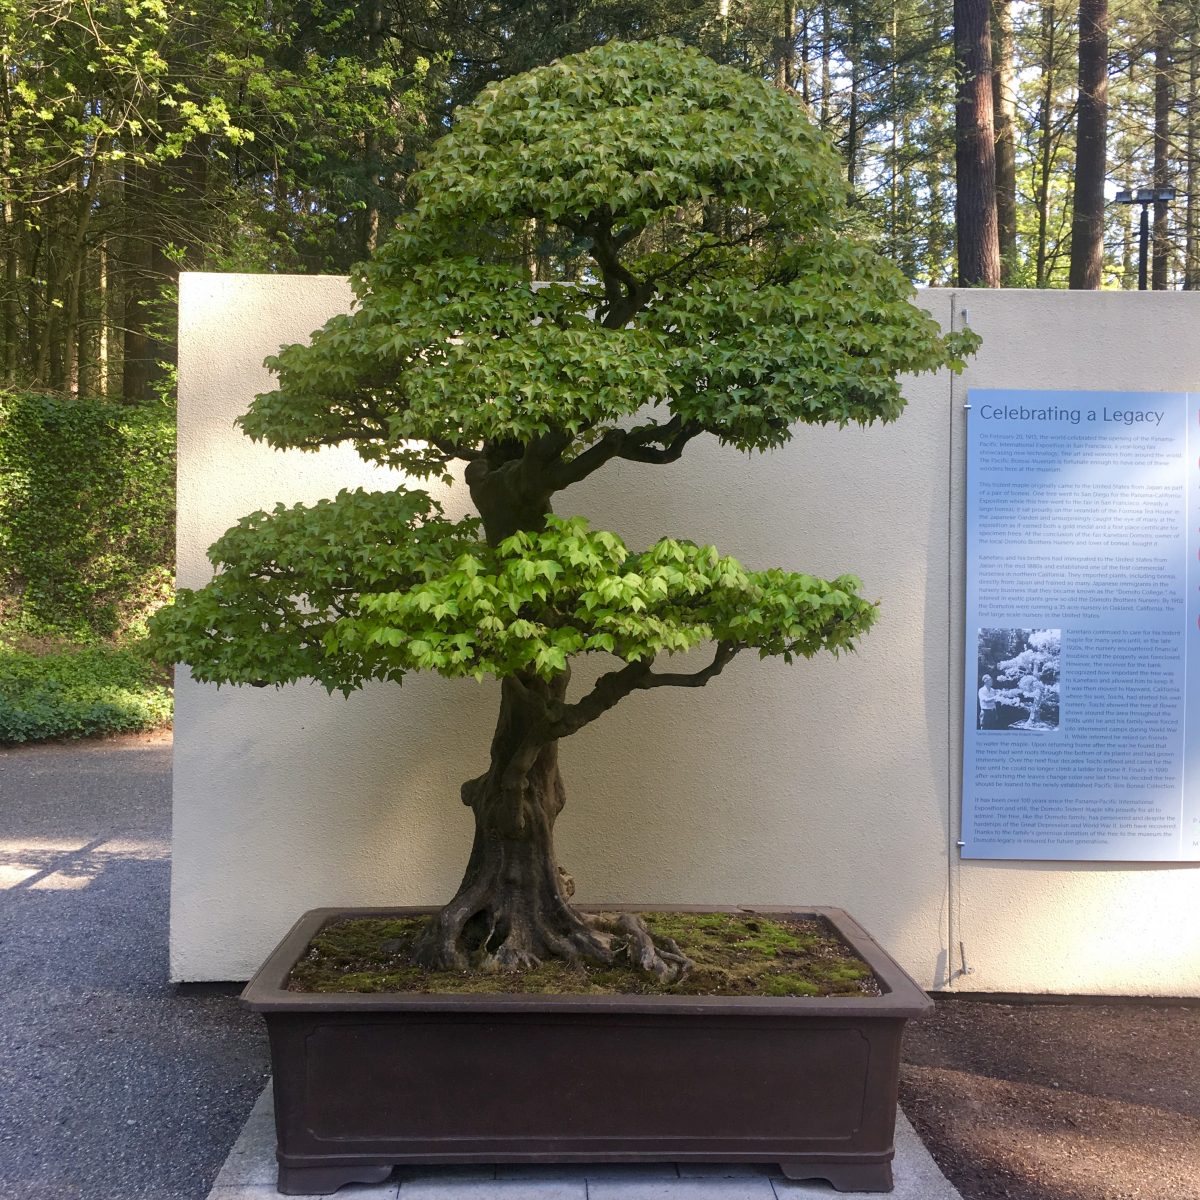 “Cây phong Domoto, Winter” (Trident Maple, Acer buergerianum), được tạo dáng thành một cây bonsai ít nhất là từ năm 1913. Nghệ nhân: ông Toichi Domoto. (Ảnh: Đăng dưới sự cho phép của Bảo tàng cây cảnh Bonsai Thái Bình Dương)